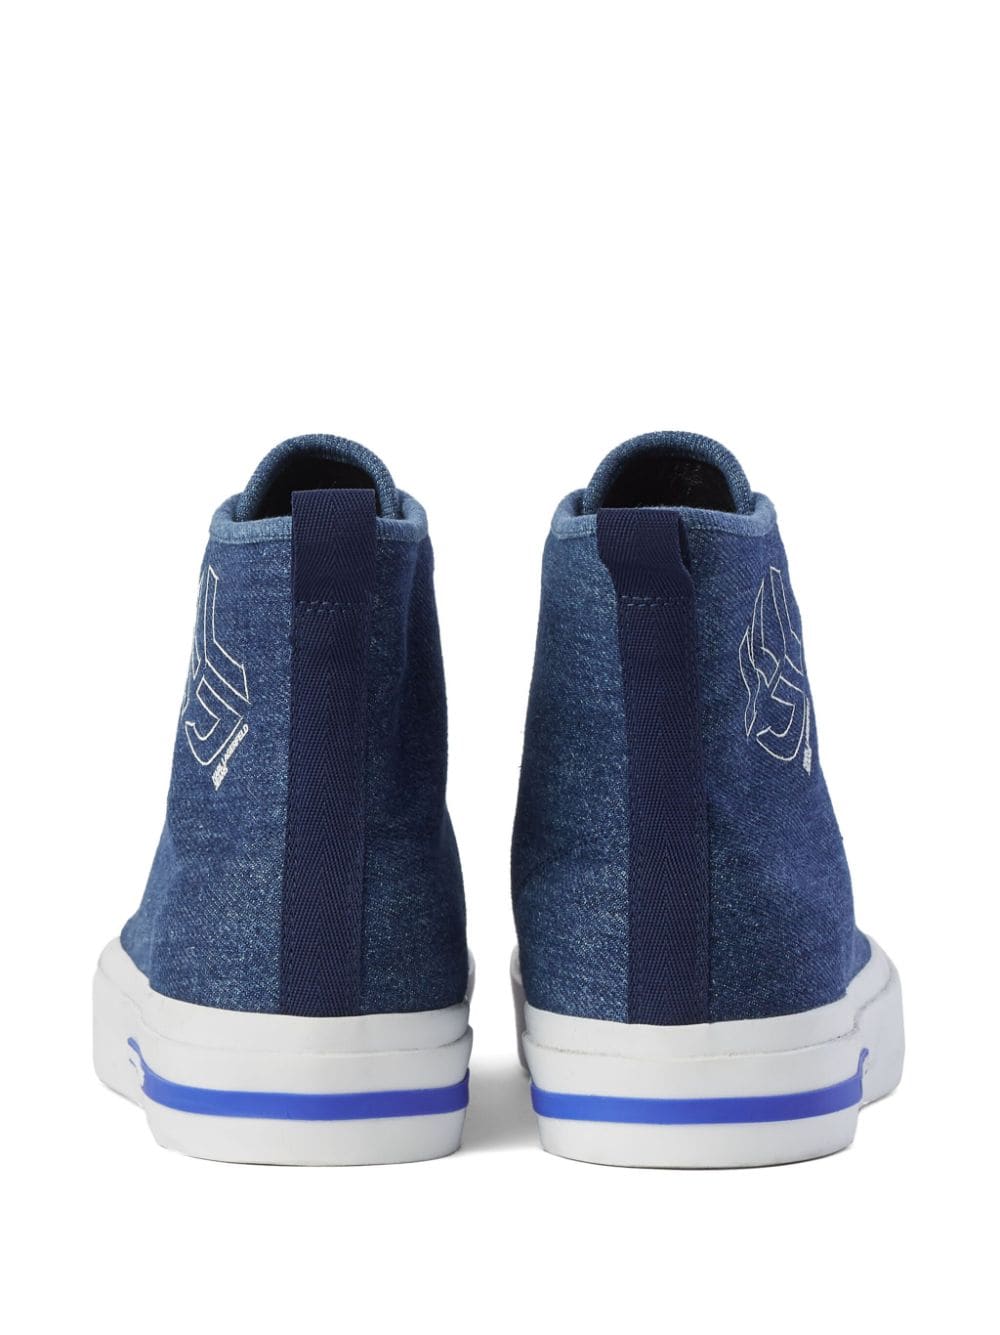 Karl Lagerfeld Jeans KLJ Vulc hi-top sneakers Blue